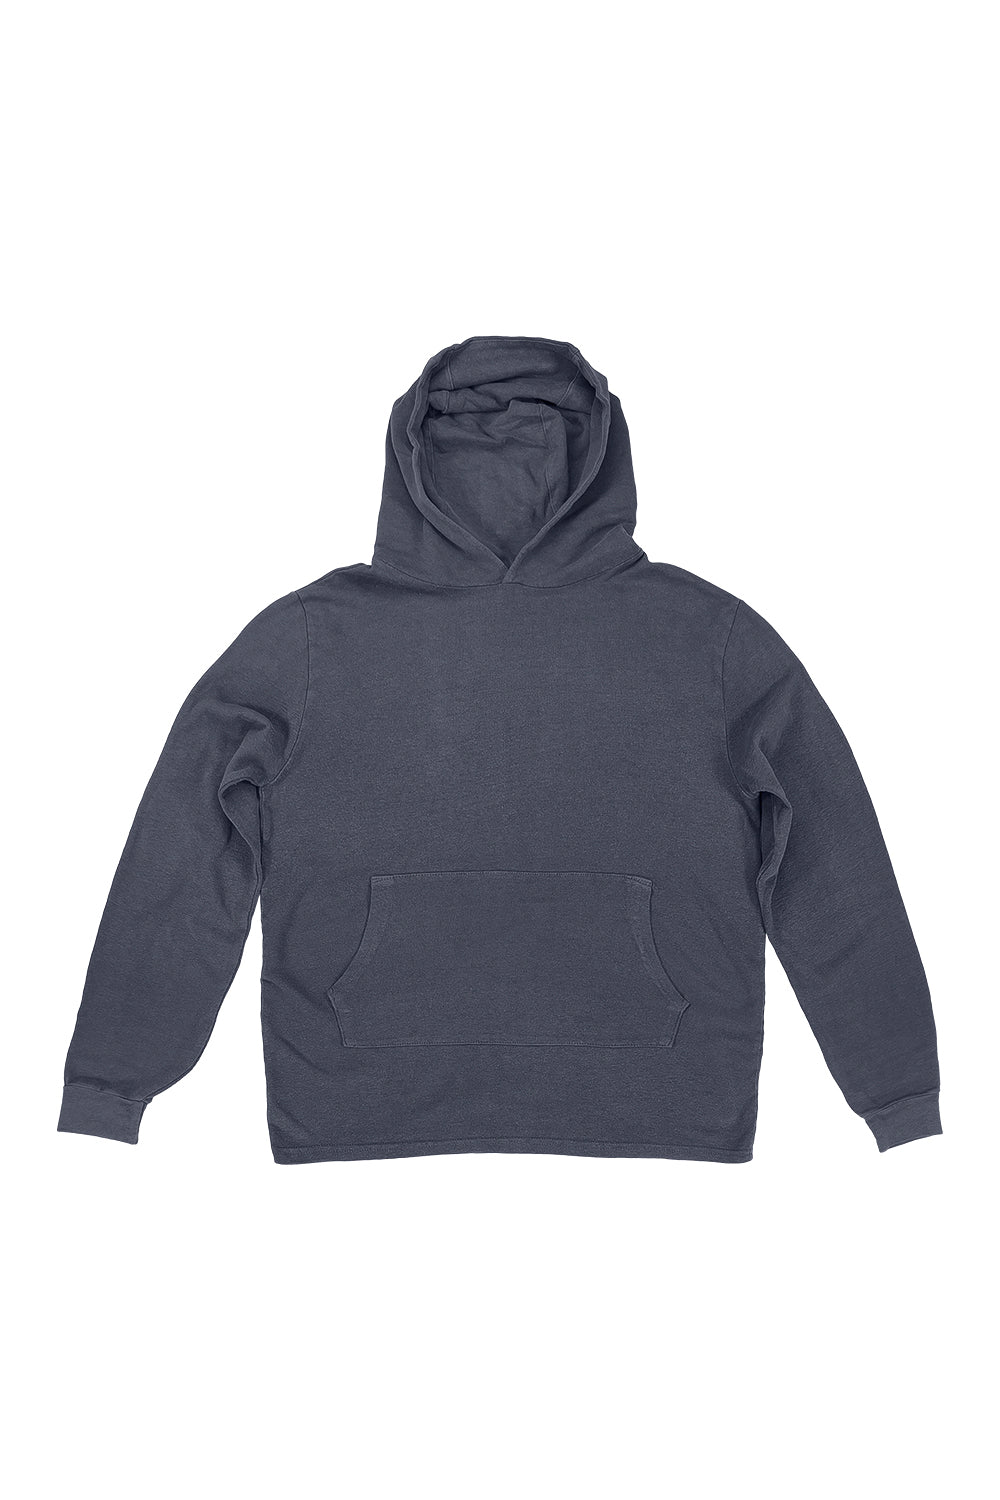 Santa Cruz Hooded Long Sleeve | Jungmaven Hemp Clothing & Accessories / Color:  Diesel Gray